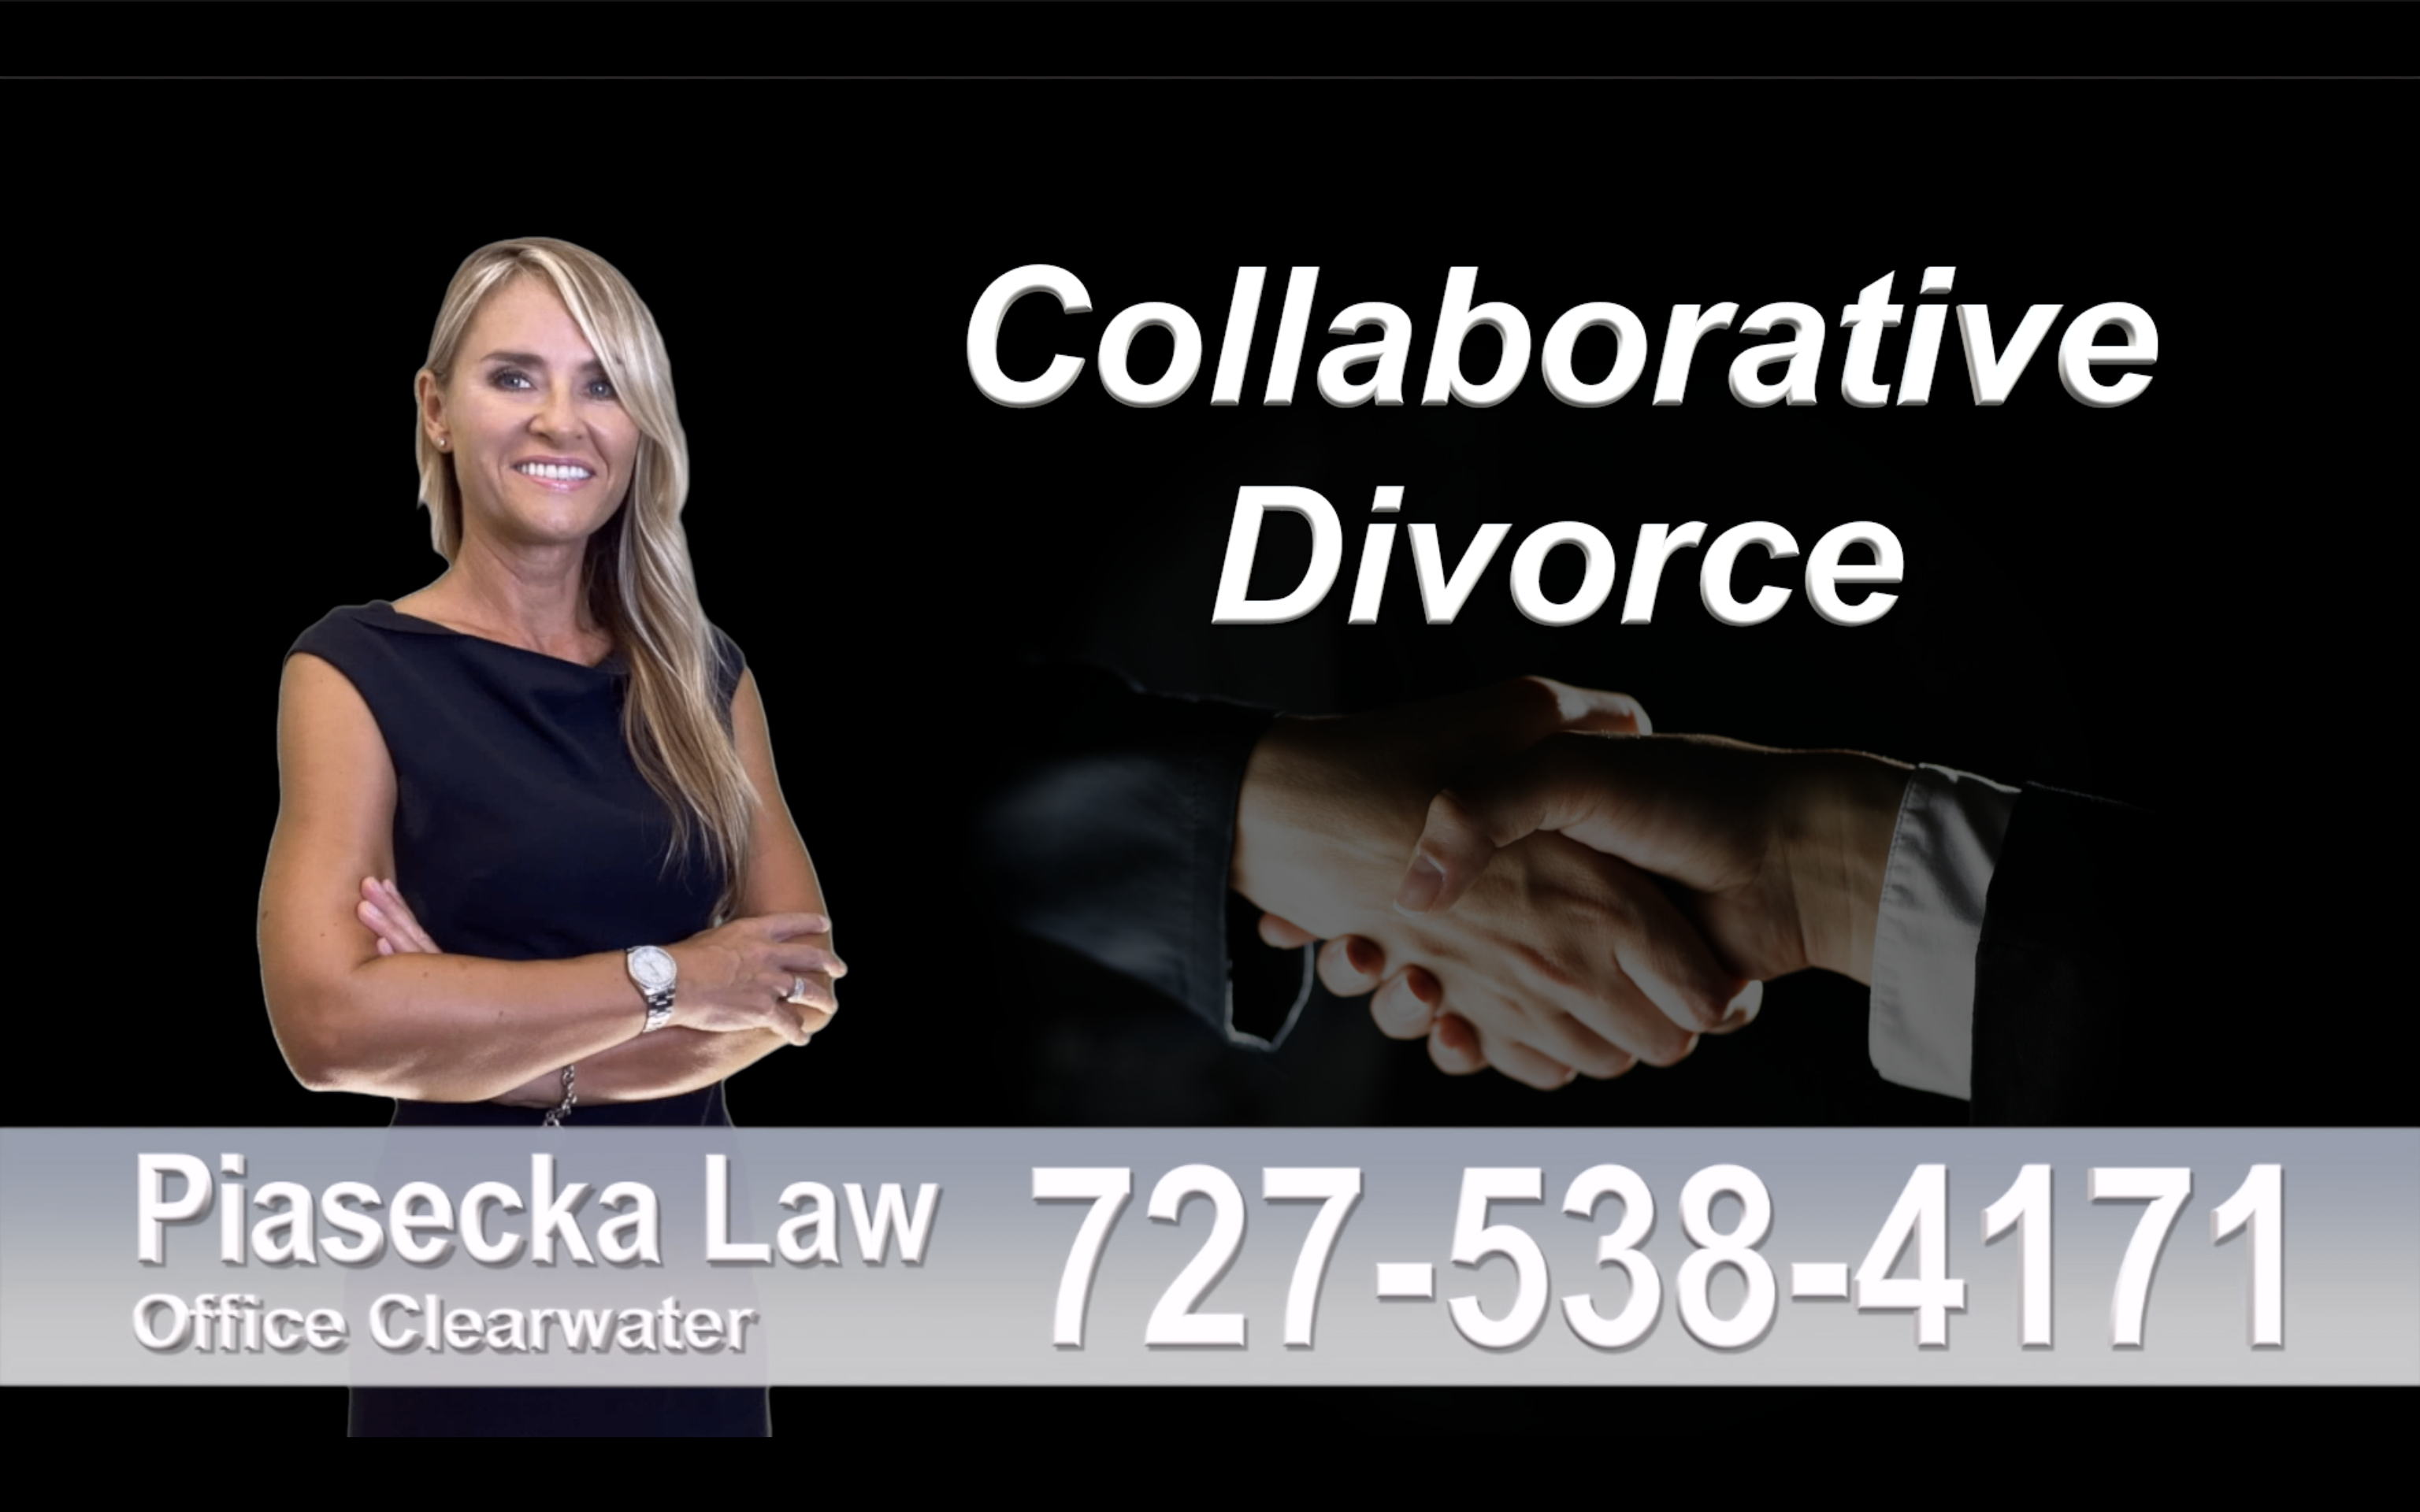 Holmes Beach Collaborative, Divorce, Attorney, Agnieszka, Piasecka, Prawnik, Rozwodowy, Rozwód, Adwokat, rozwodowy, Najlepszy, Best, Collaborative, Divorce, Lawyer